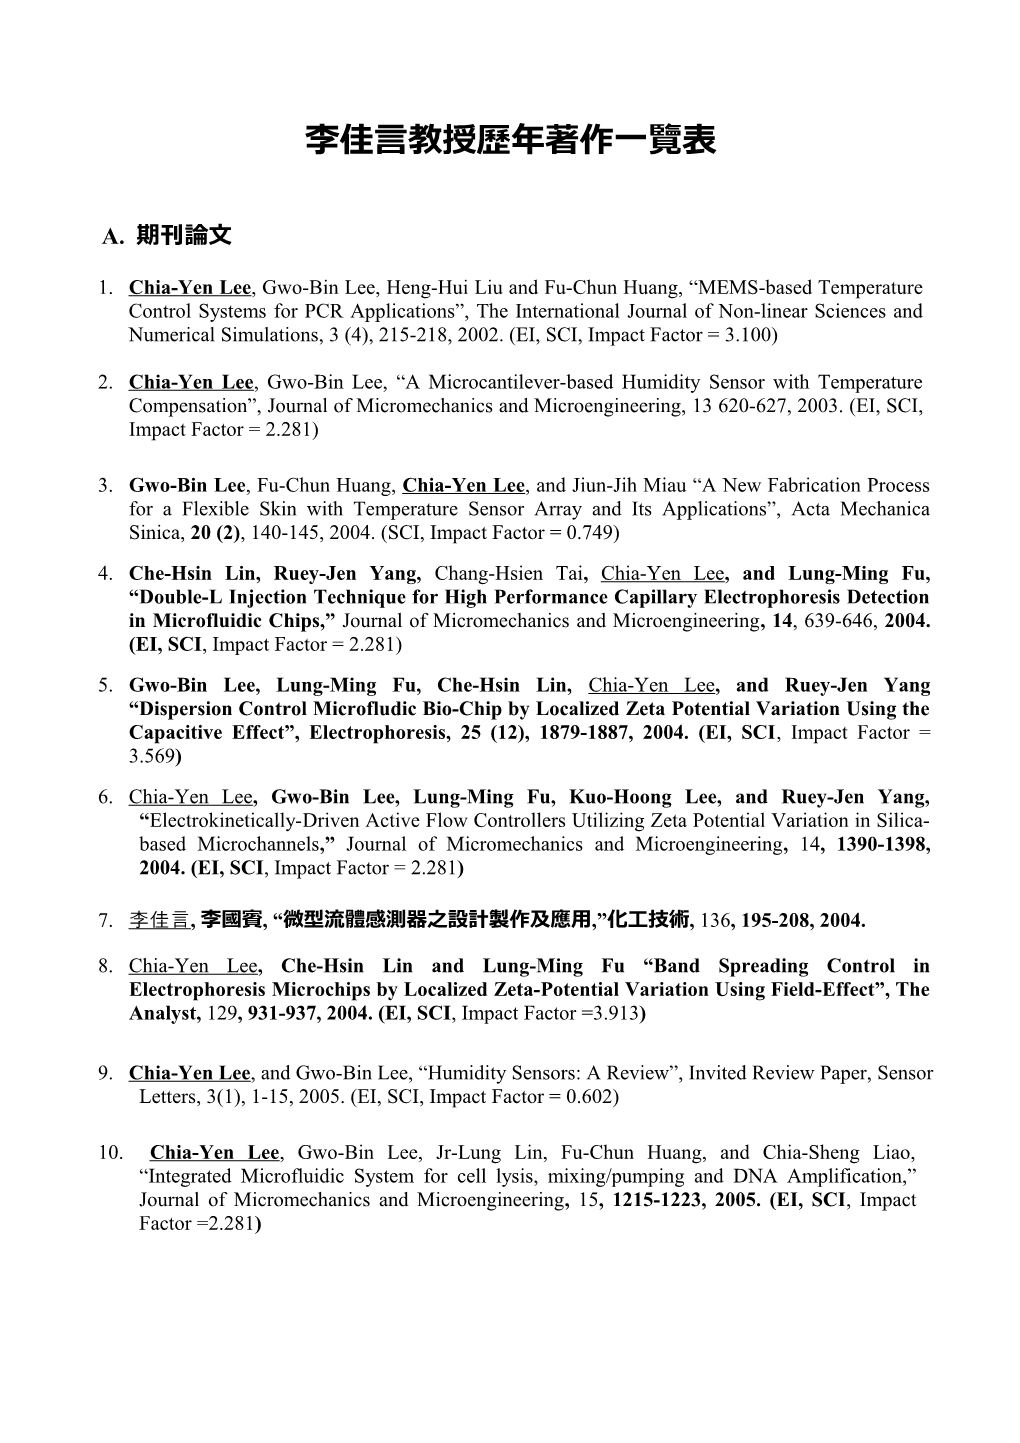 1.Chia-Yen Lee, Gwo-Bin Lee, Heng-Hui Liu and Fu-Chun Huang, MEMS-Based Temperature Control